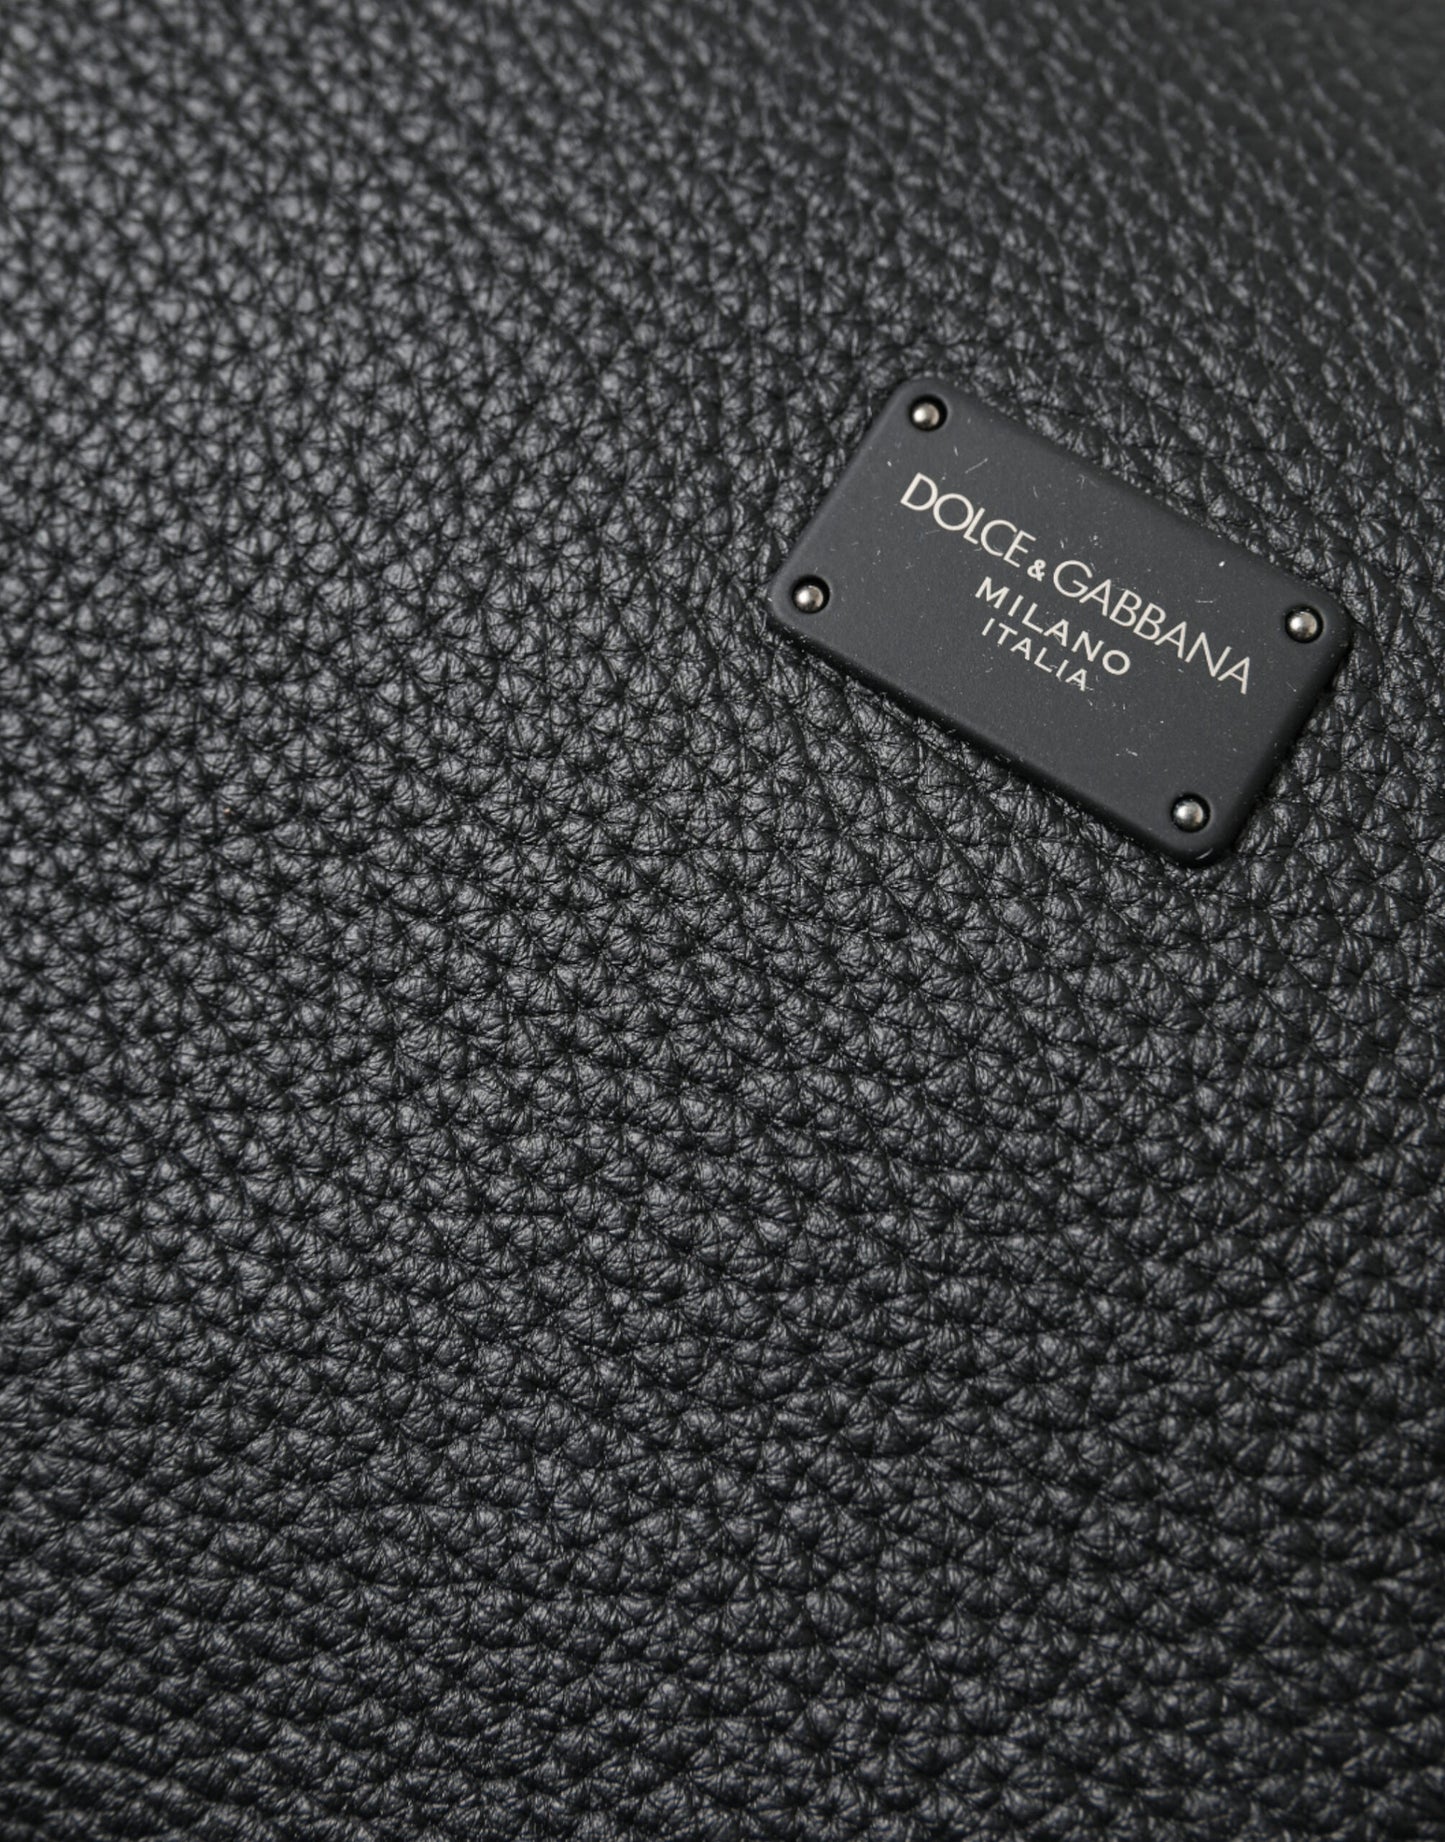 Black Leather Chain Strap Baguette Shoulder Bag